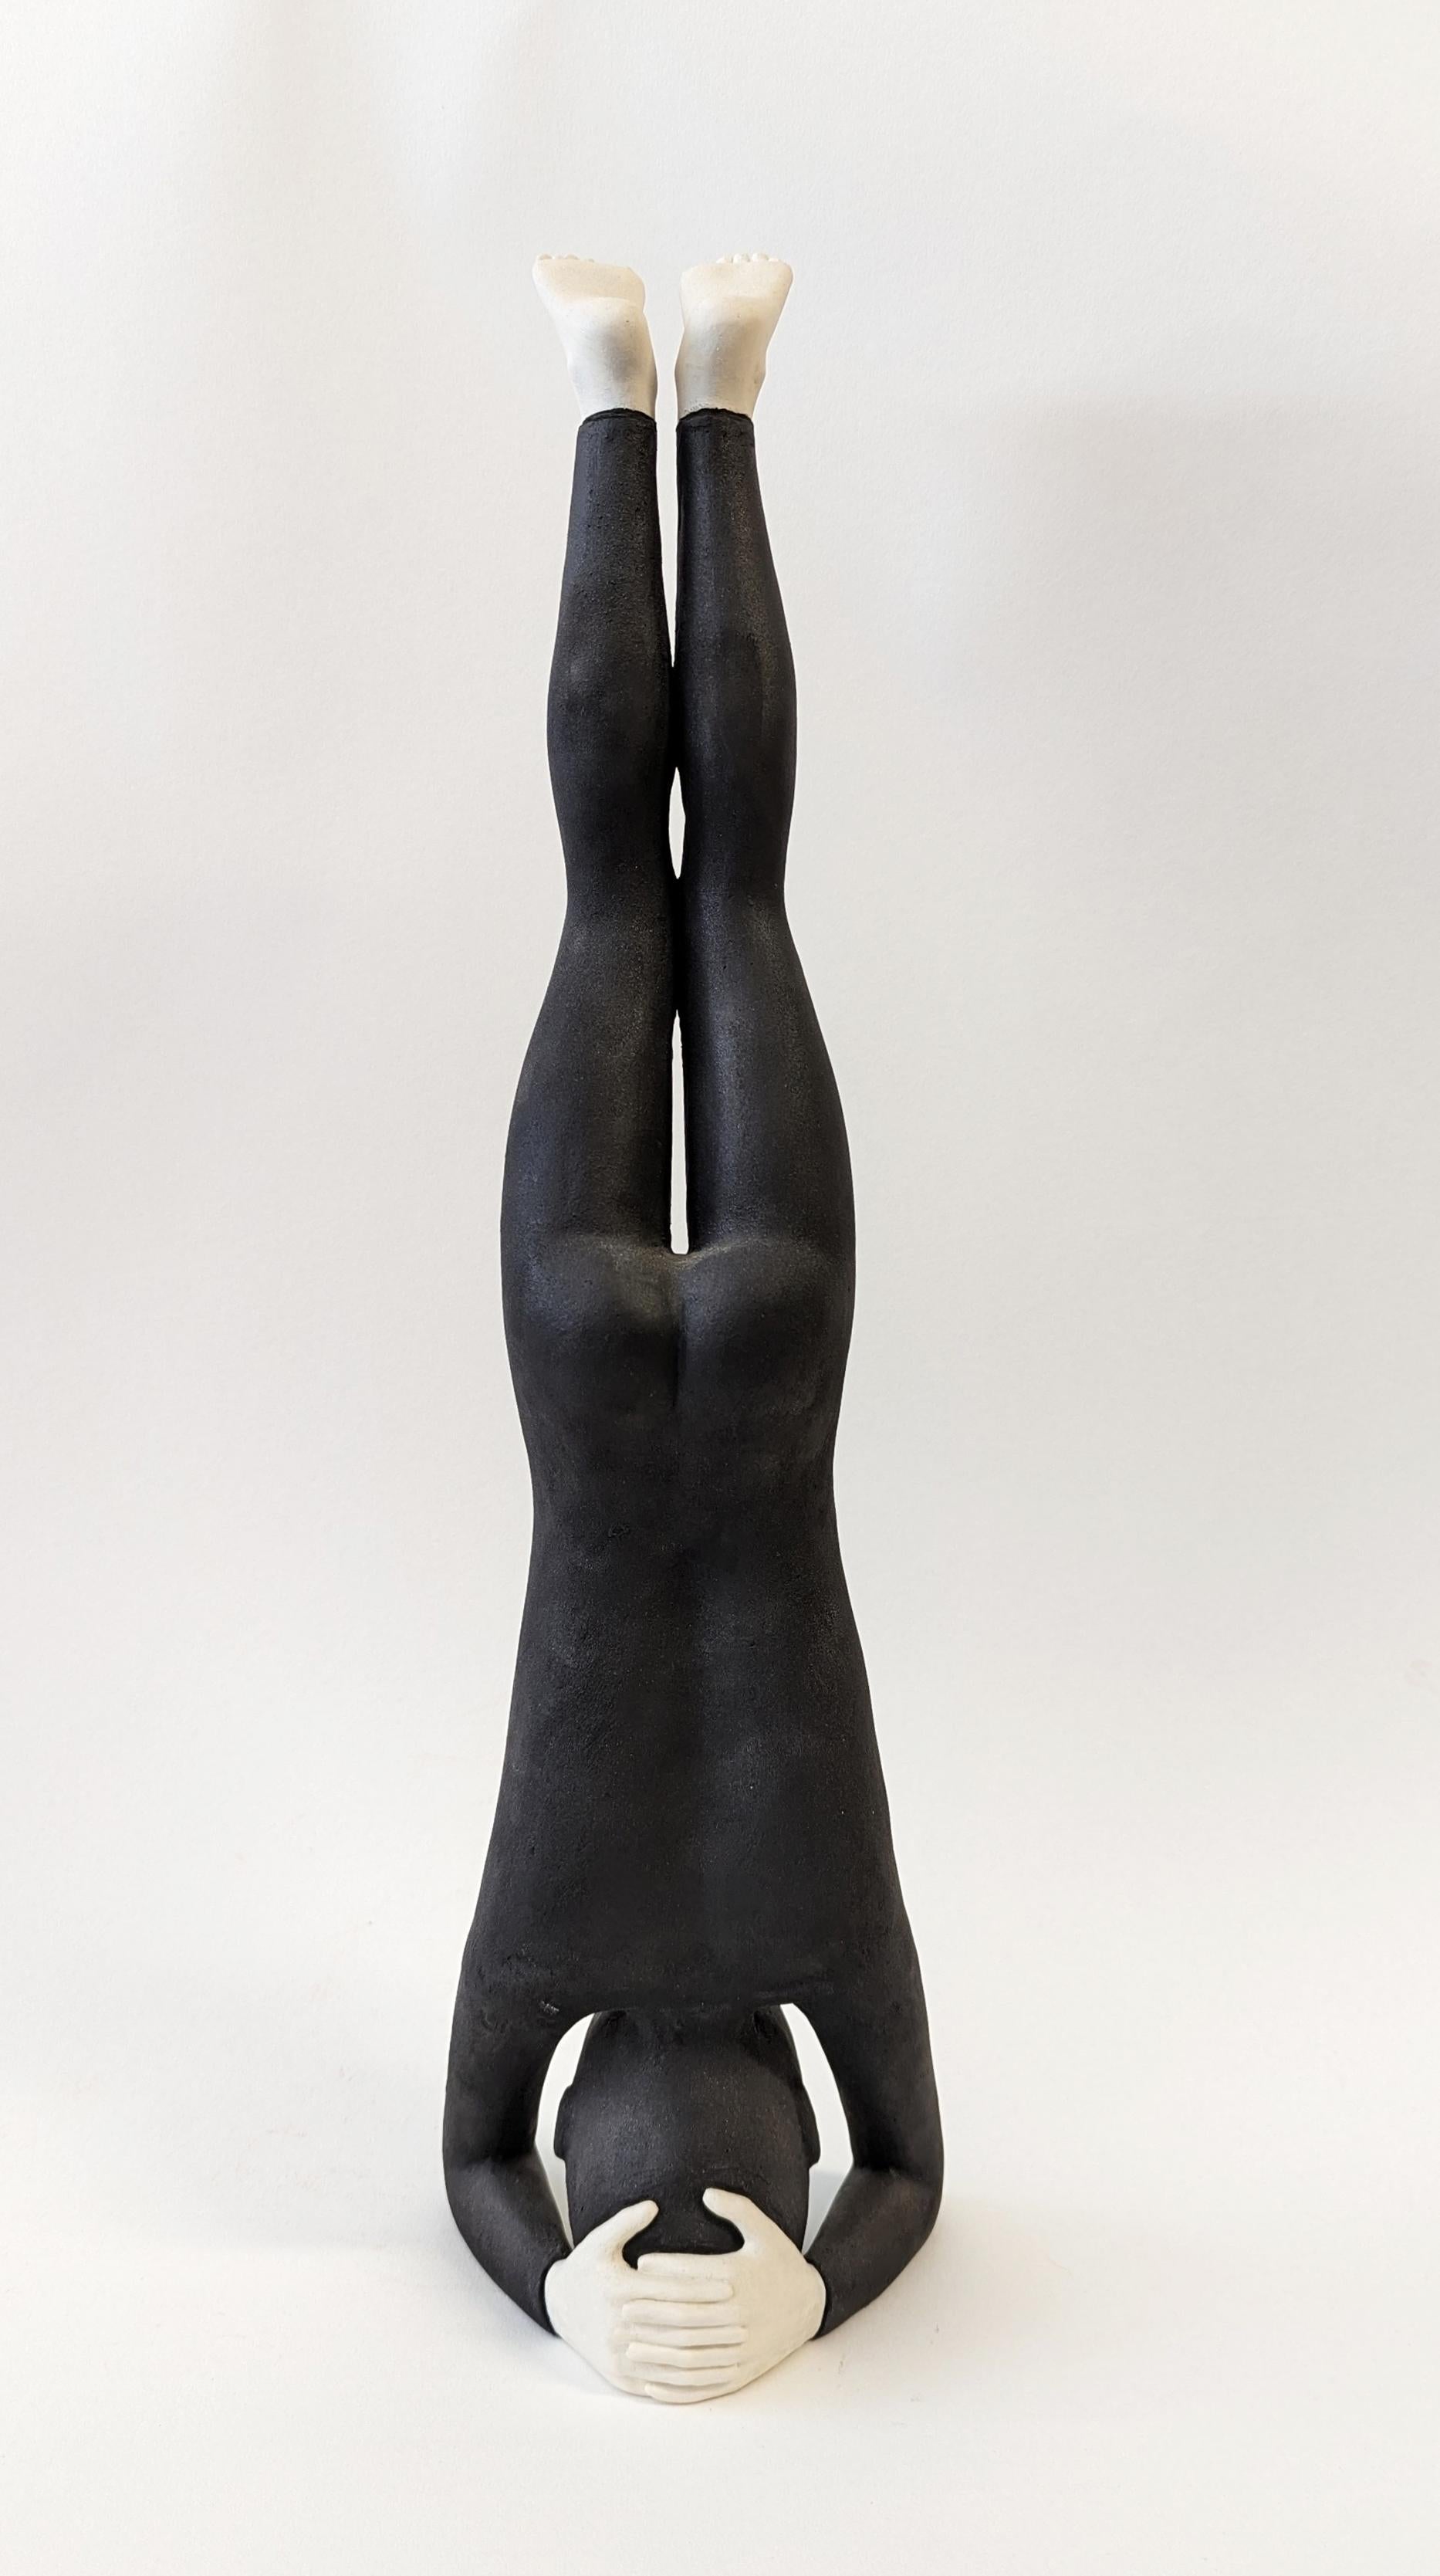 Kopfständer – figurative Skulptur  – Sculpture von Orly Montag